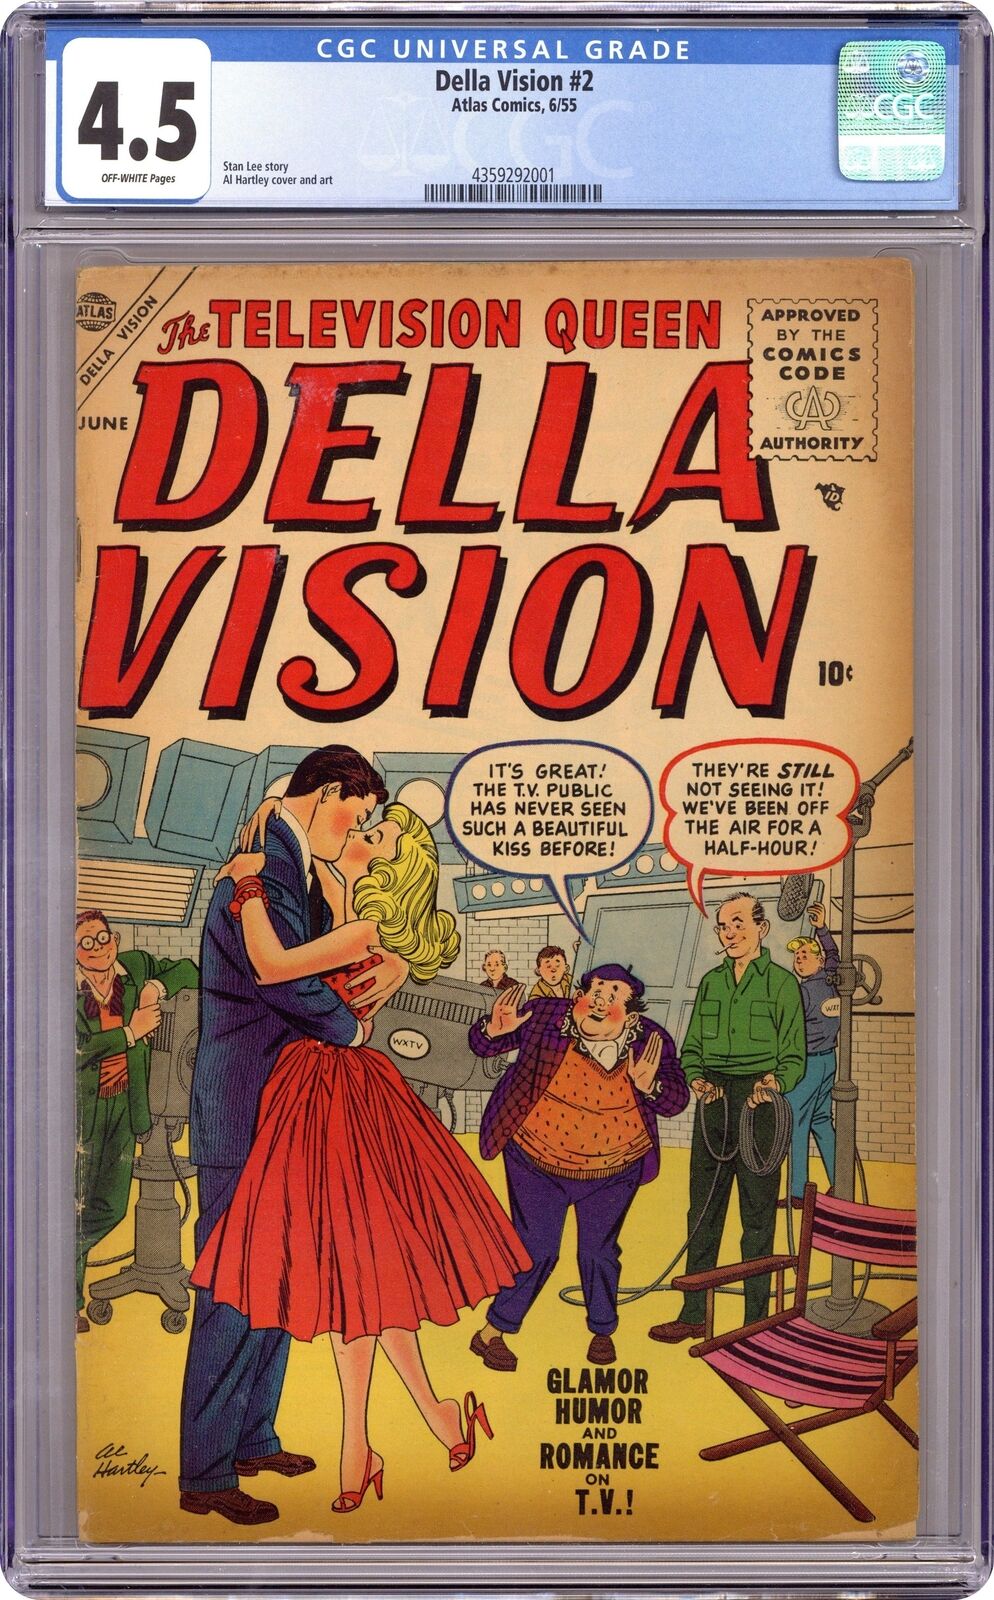 Della Vision #2 CGC 4.5 1955 4359292001